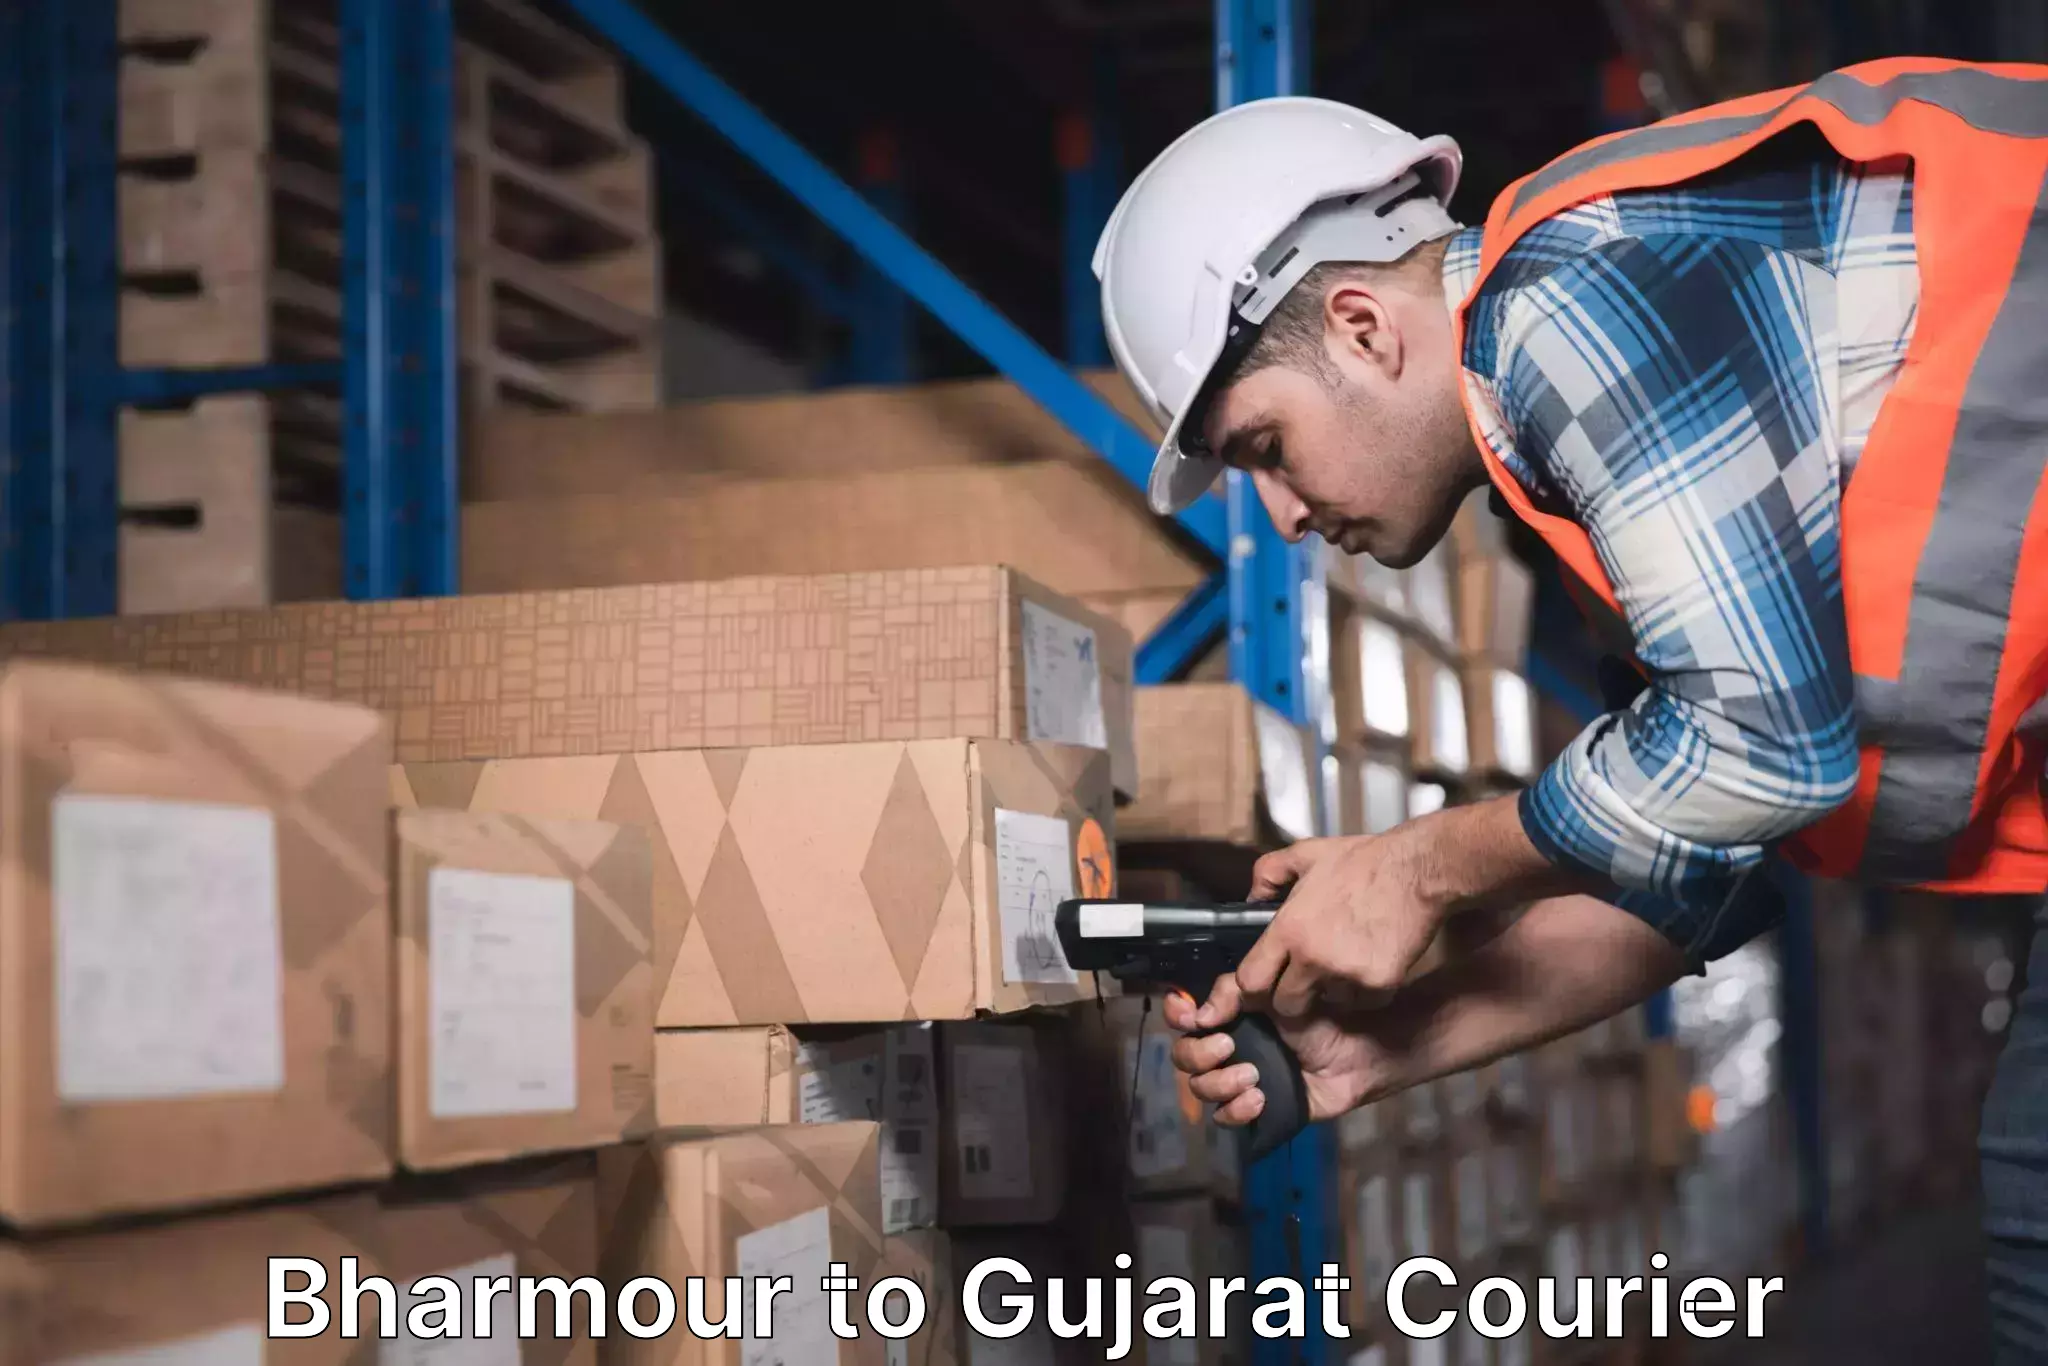 Quality courier services Bharmour to Kadodara